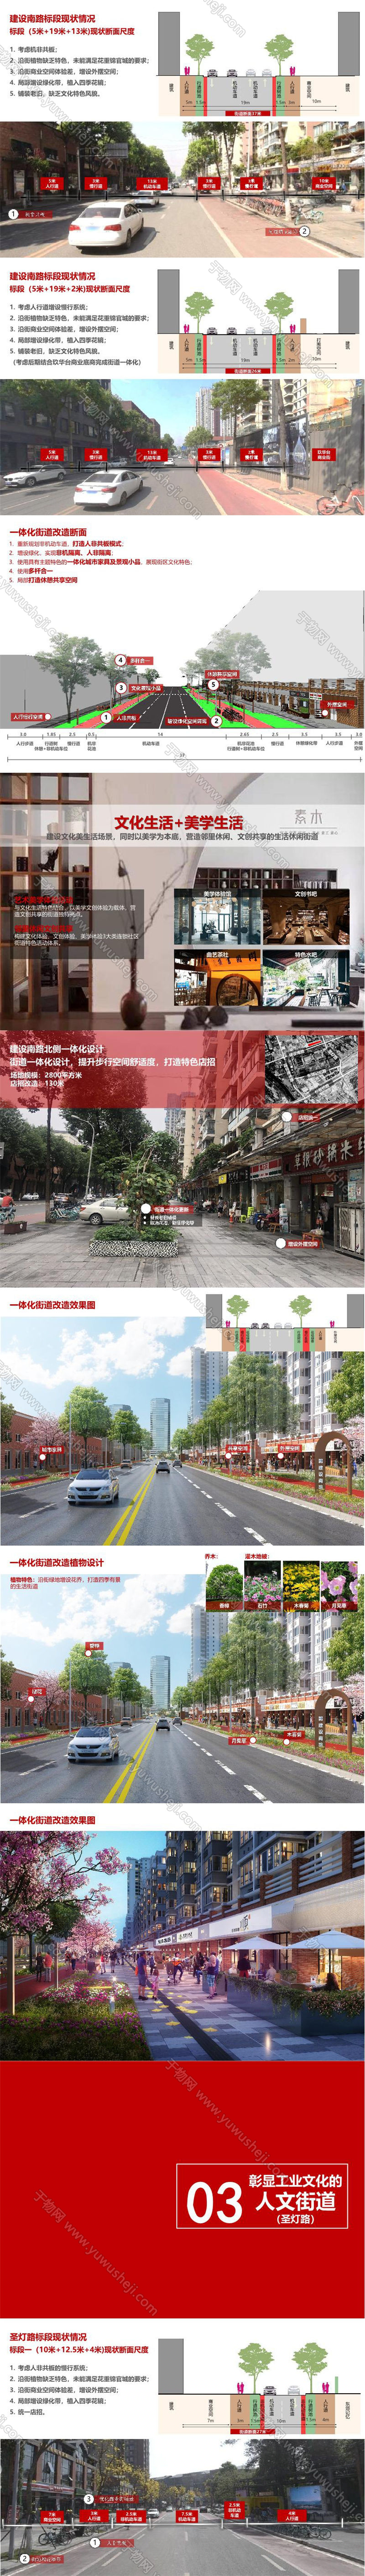 2023 东郊记忆街道一体化城市更新景观规划设计方案文本.page49.Page41 50